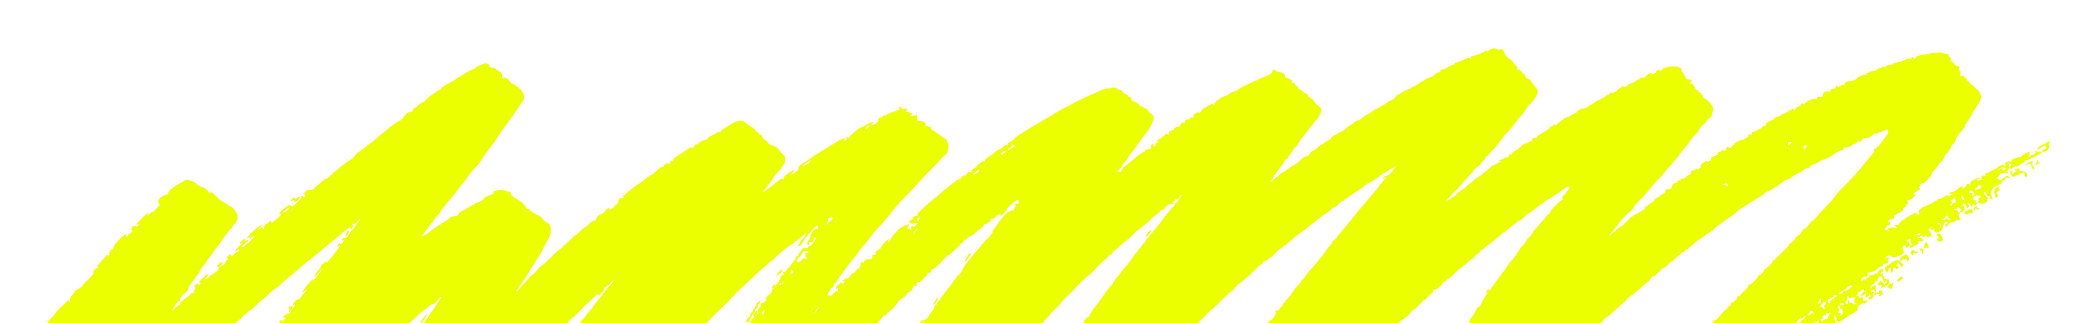 Mark Yellow 1